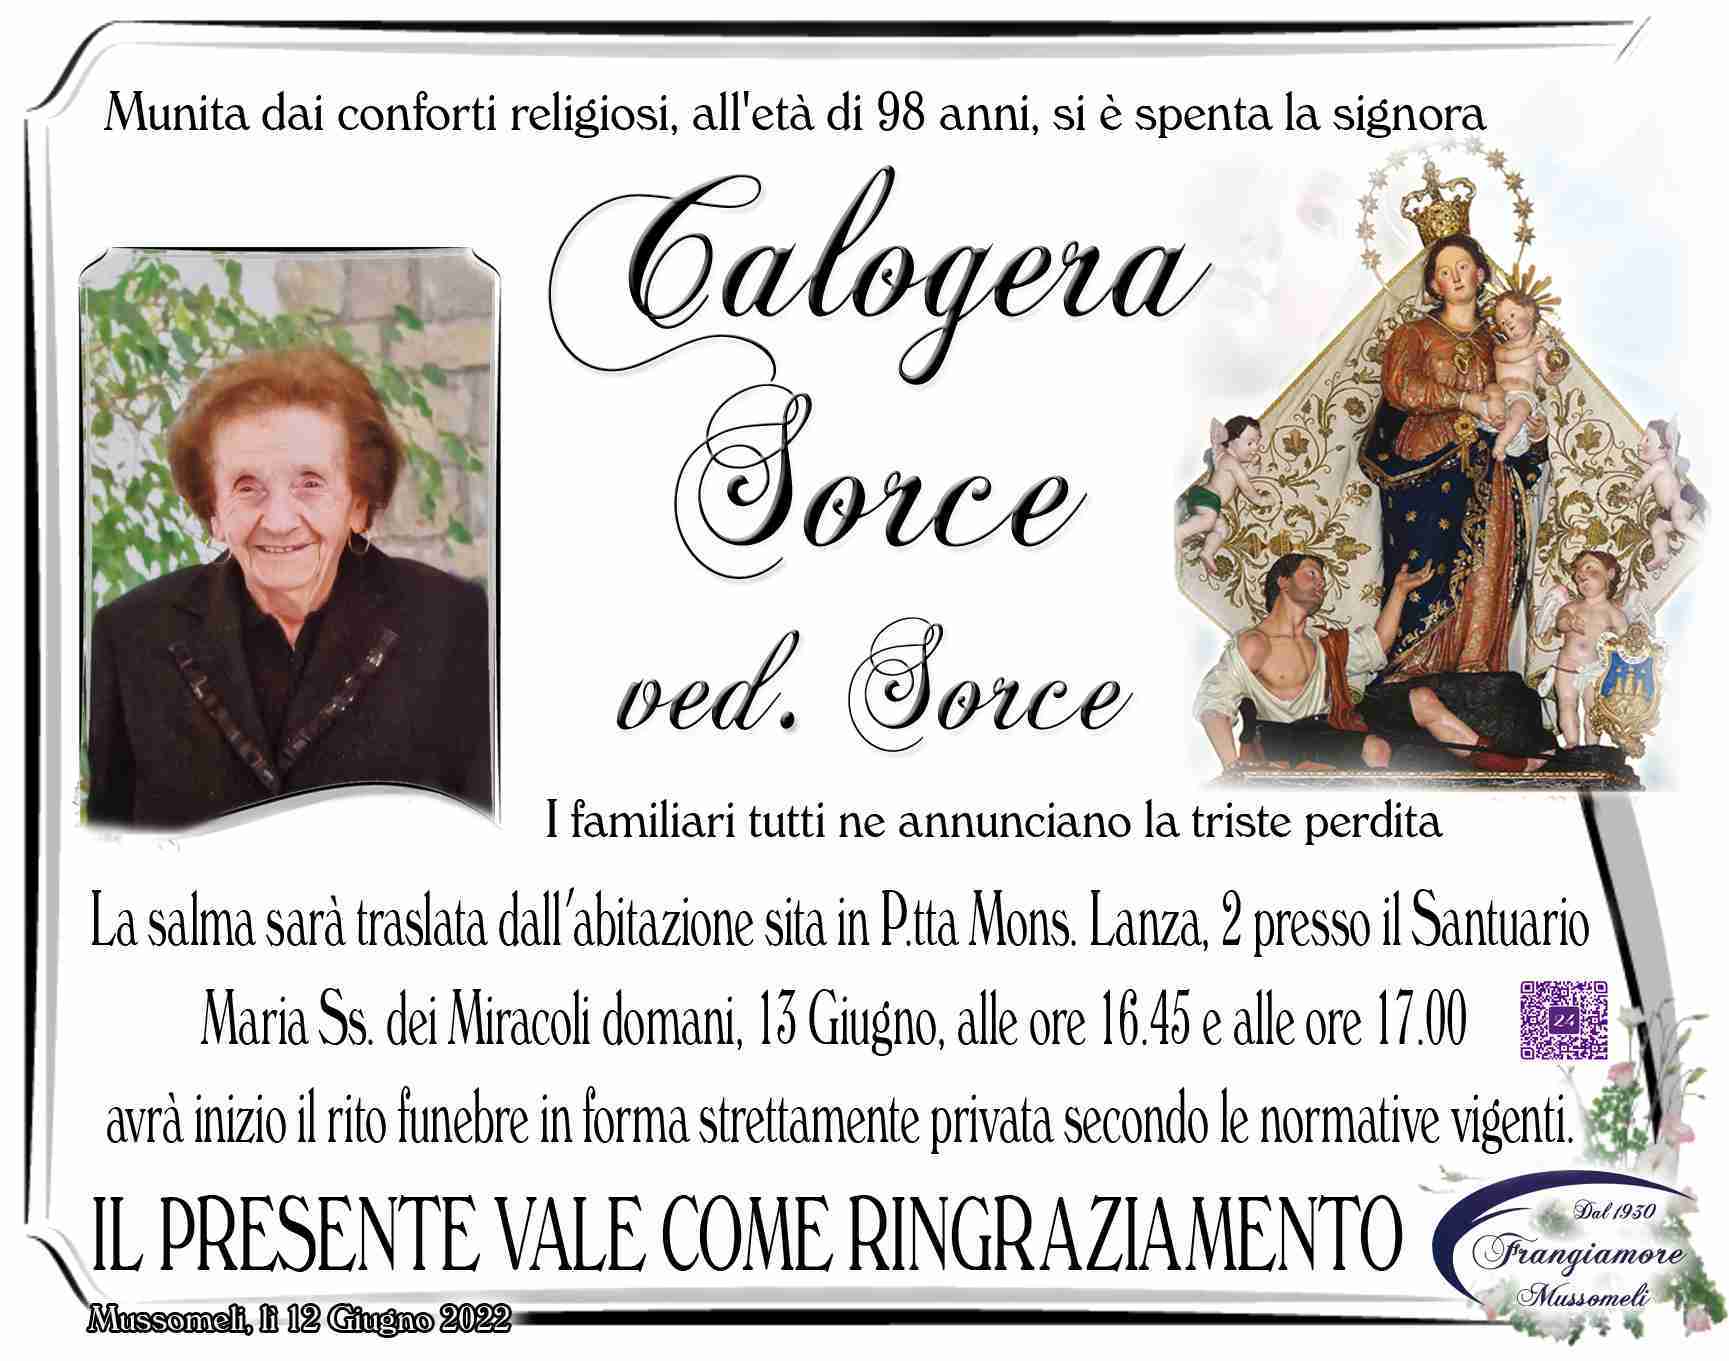 Calogera Sorce